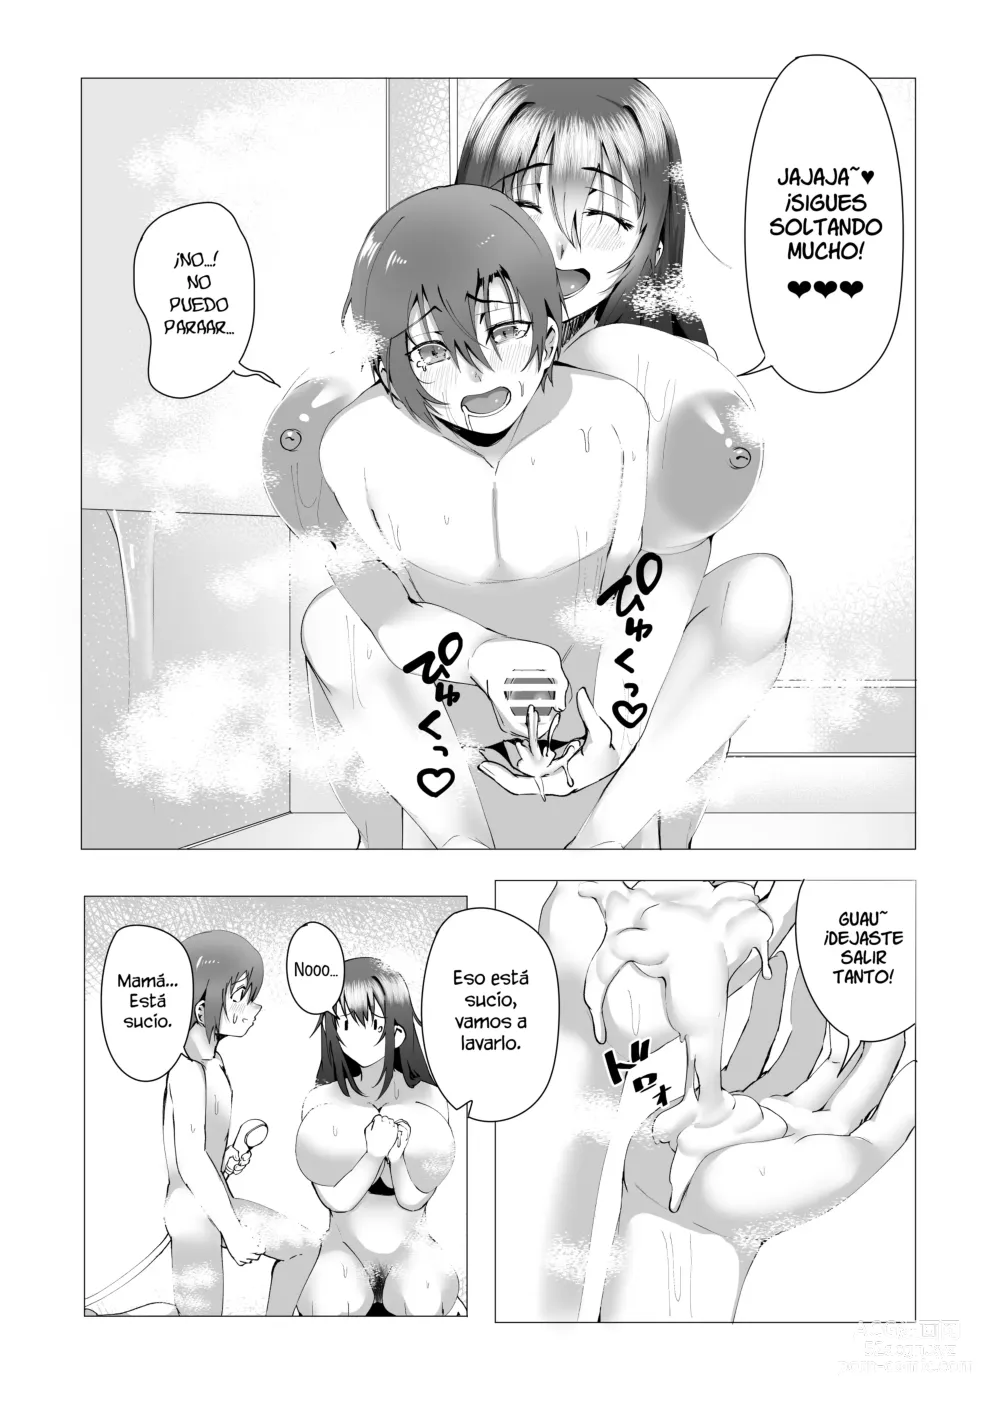 Page 30 of doujinshi ¿Estas bien con mami?